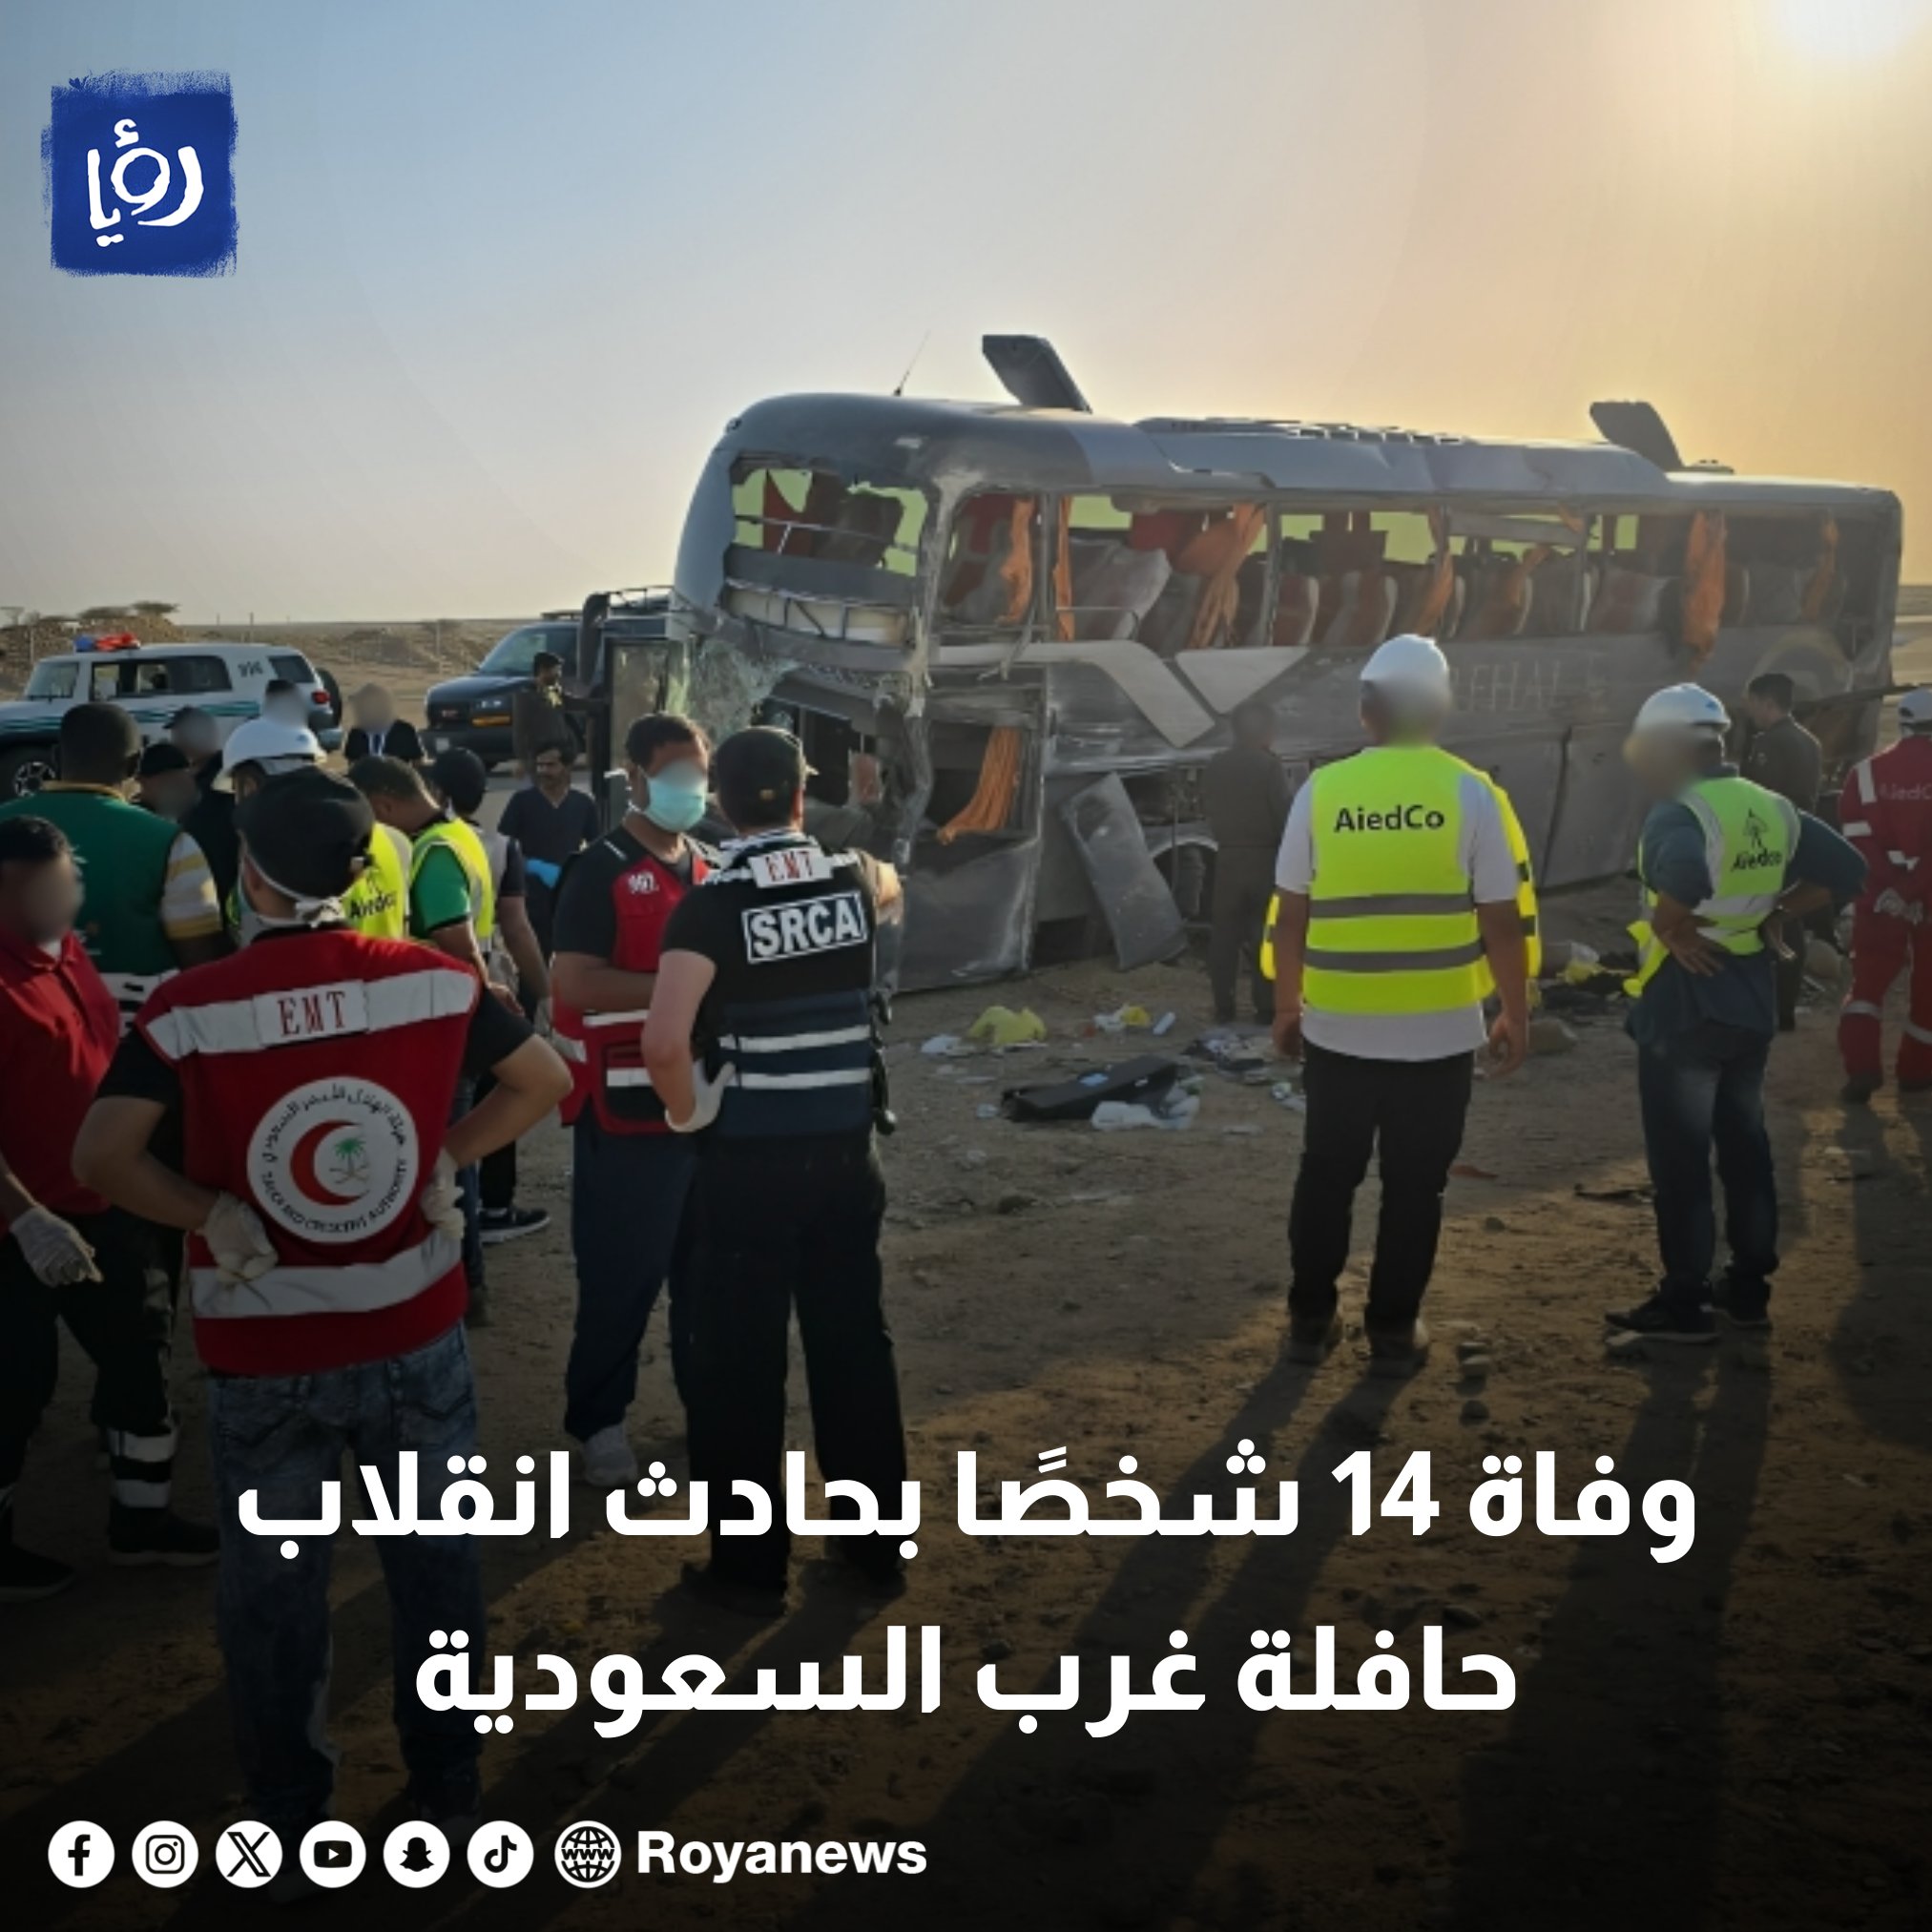 وفاة 14 شخصا بحادث انقلاب حافلة في السعودية - صور #رؤيا_الإخباري 